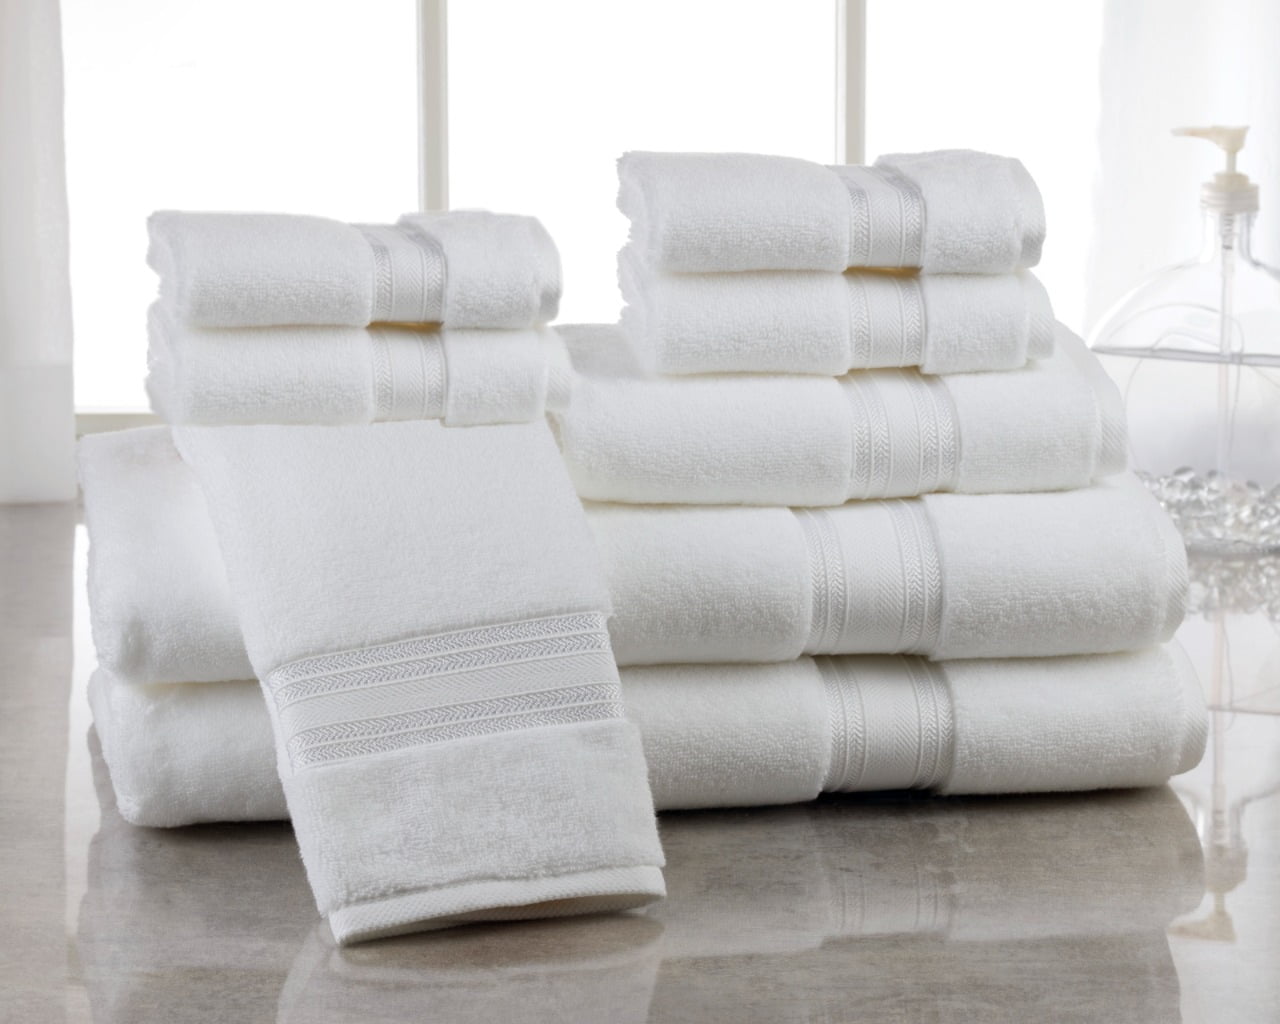 Addy Home 100% Cotton Ultra Low Twist 8-Piece Bath Towel Set